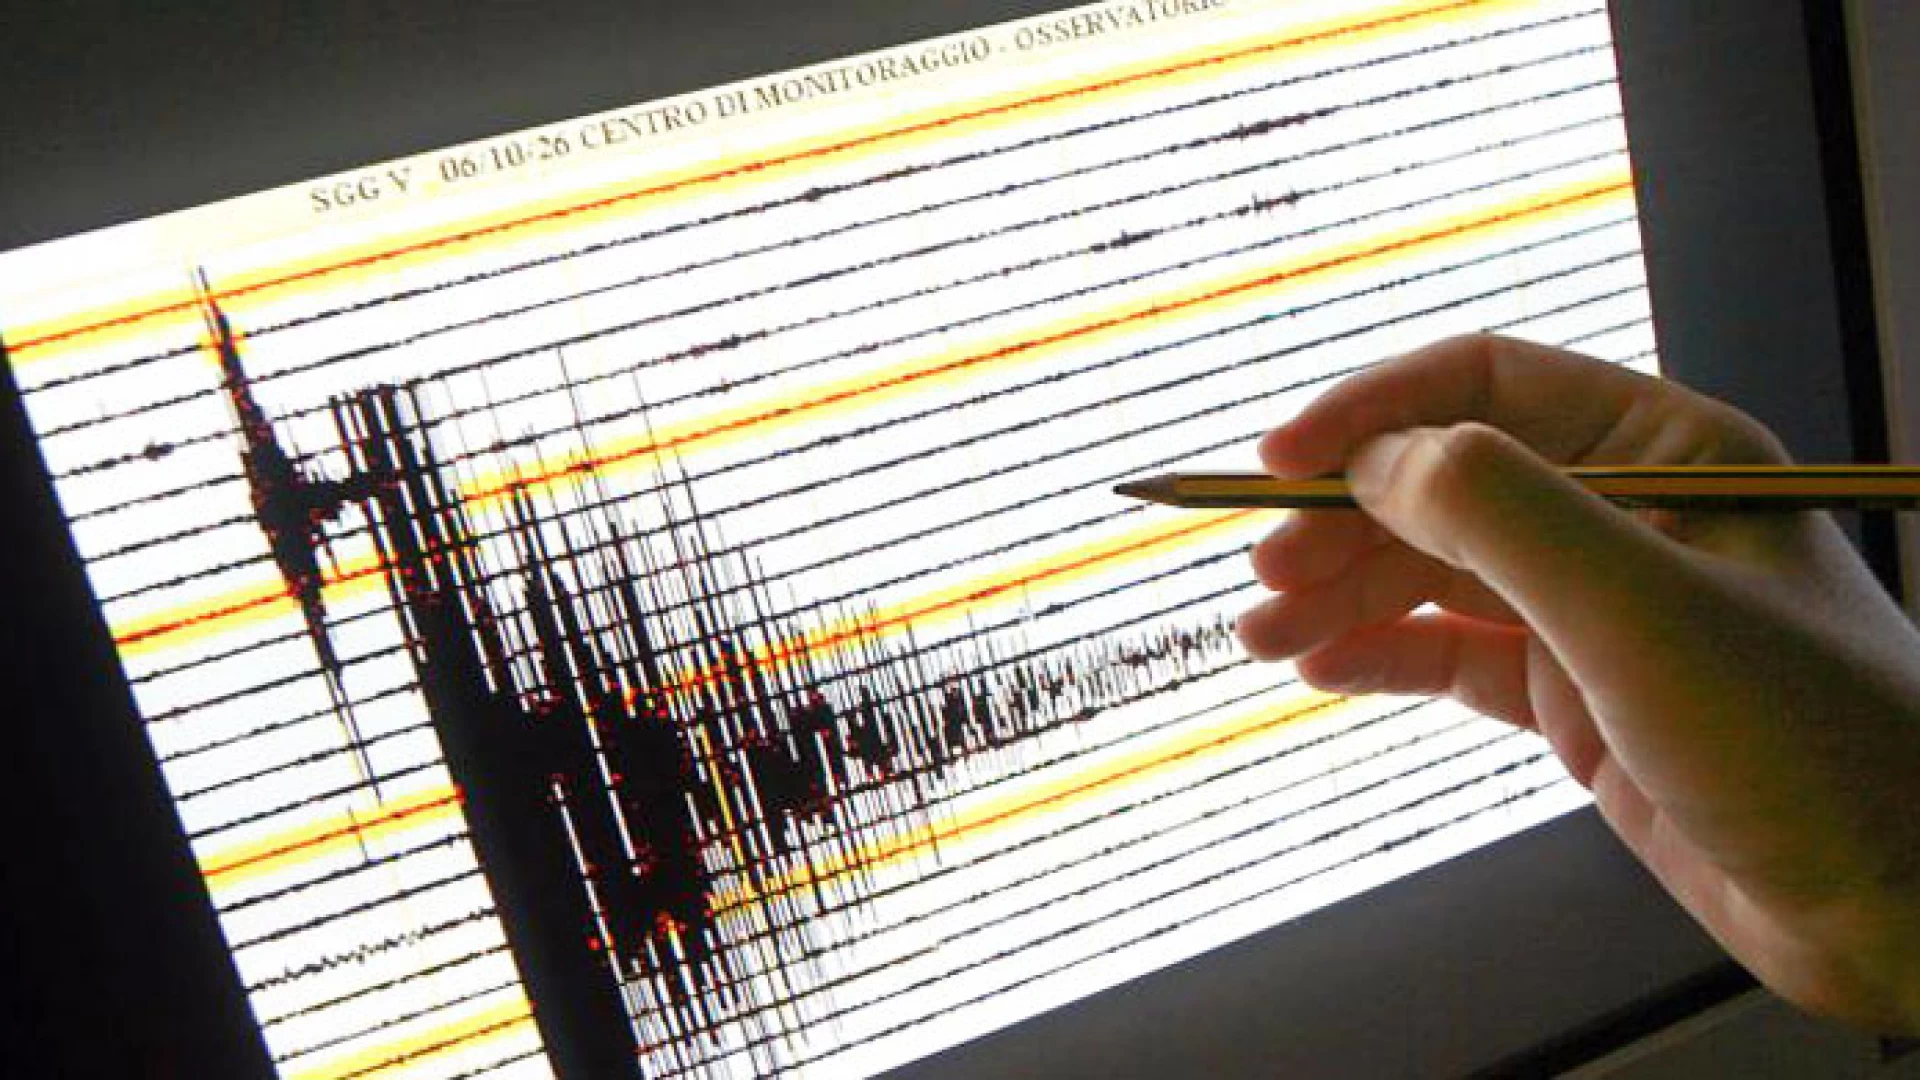 Terremoto in Basso Molise con epicentro Guardialfiera. Magnitudo 3.3 Avvertita dalla popolazione locale.